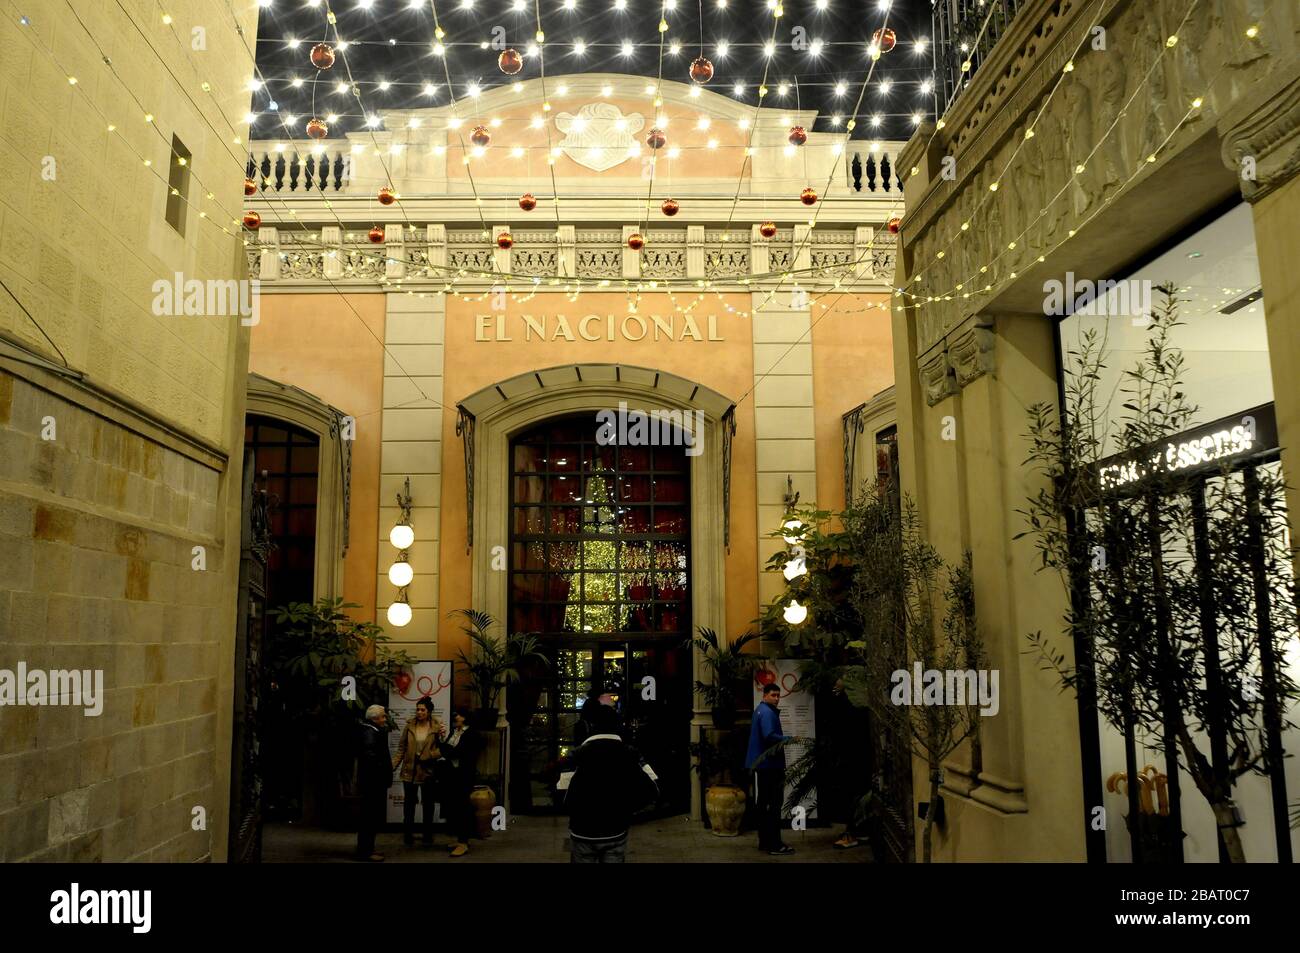 El Nacional, erlebt Restaurants, einen symbolträchtigen Ort mit der Luft eines alten Bahnhofs, der vier Arten von Küche in vier Räumen bietet. Paseo de Stockfoto